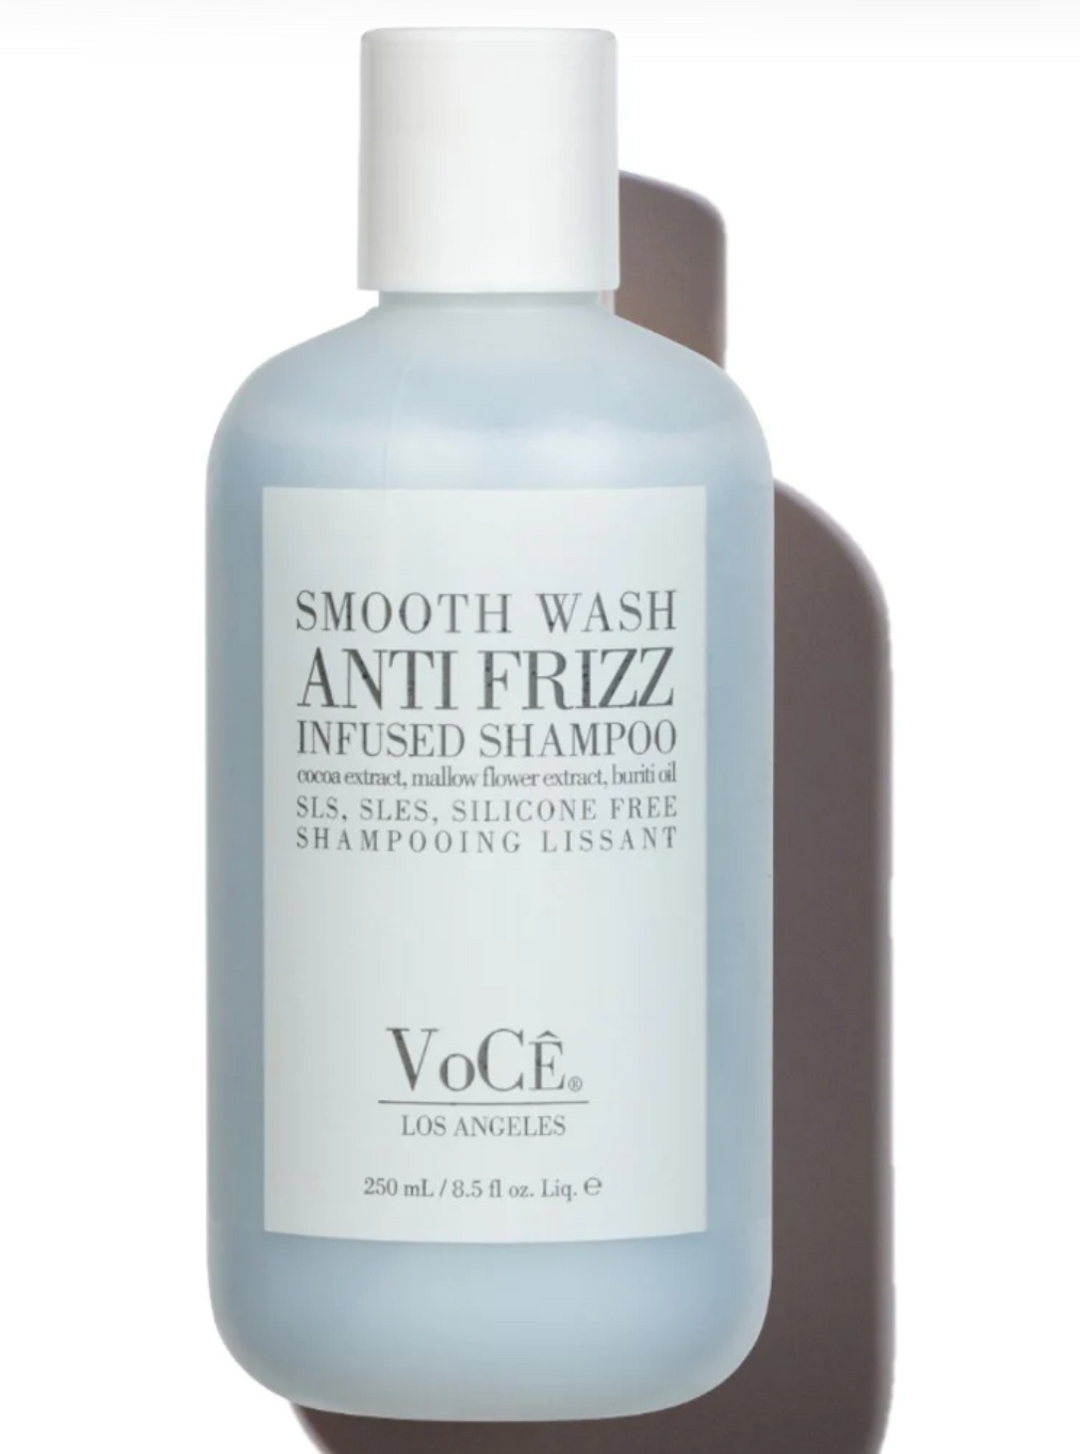 Smoothing Shampoo